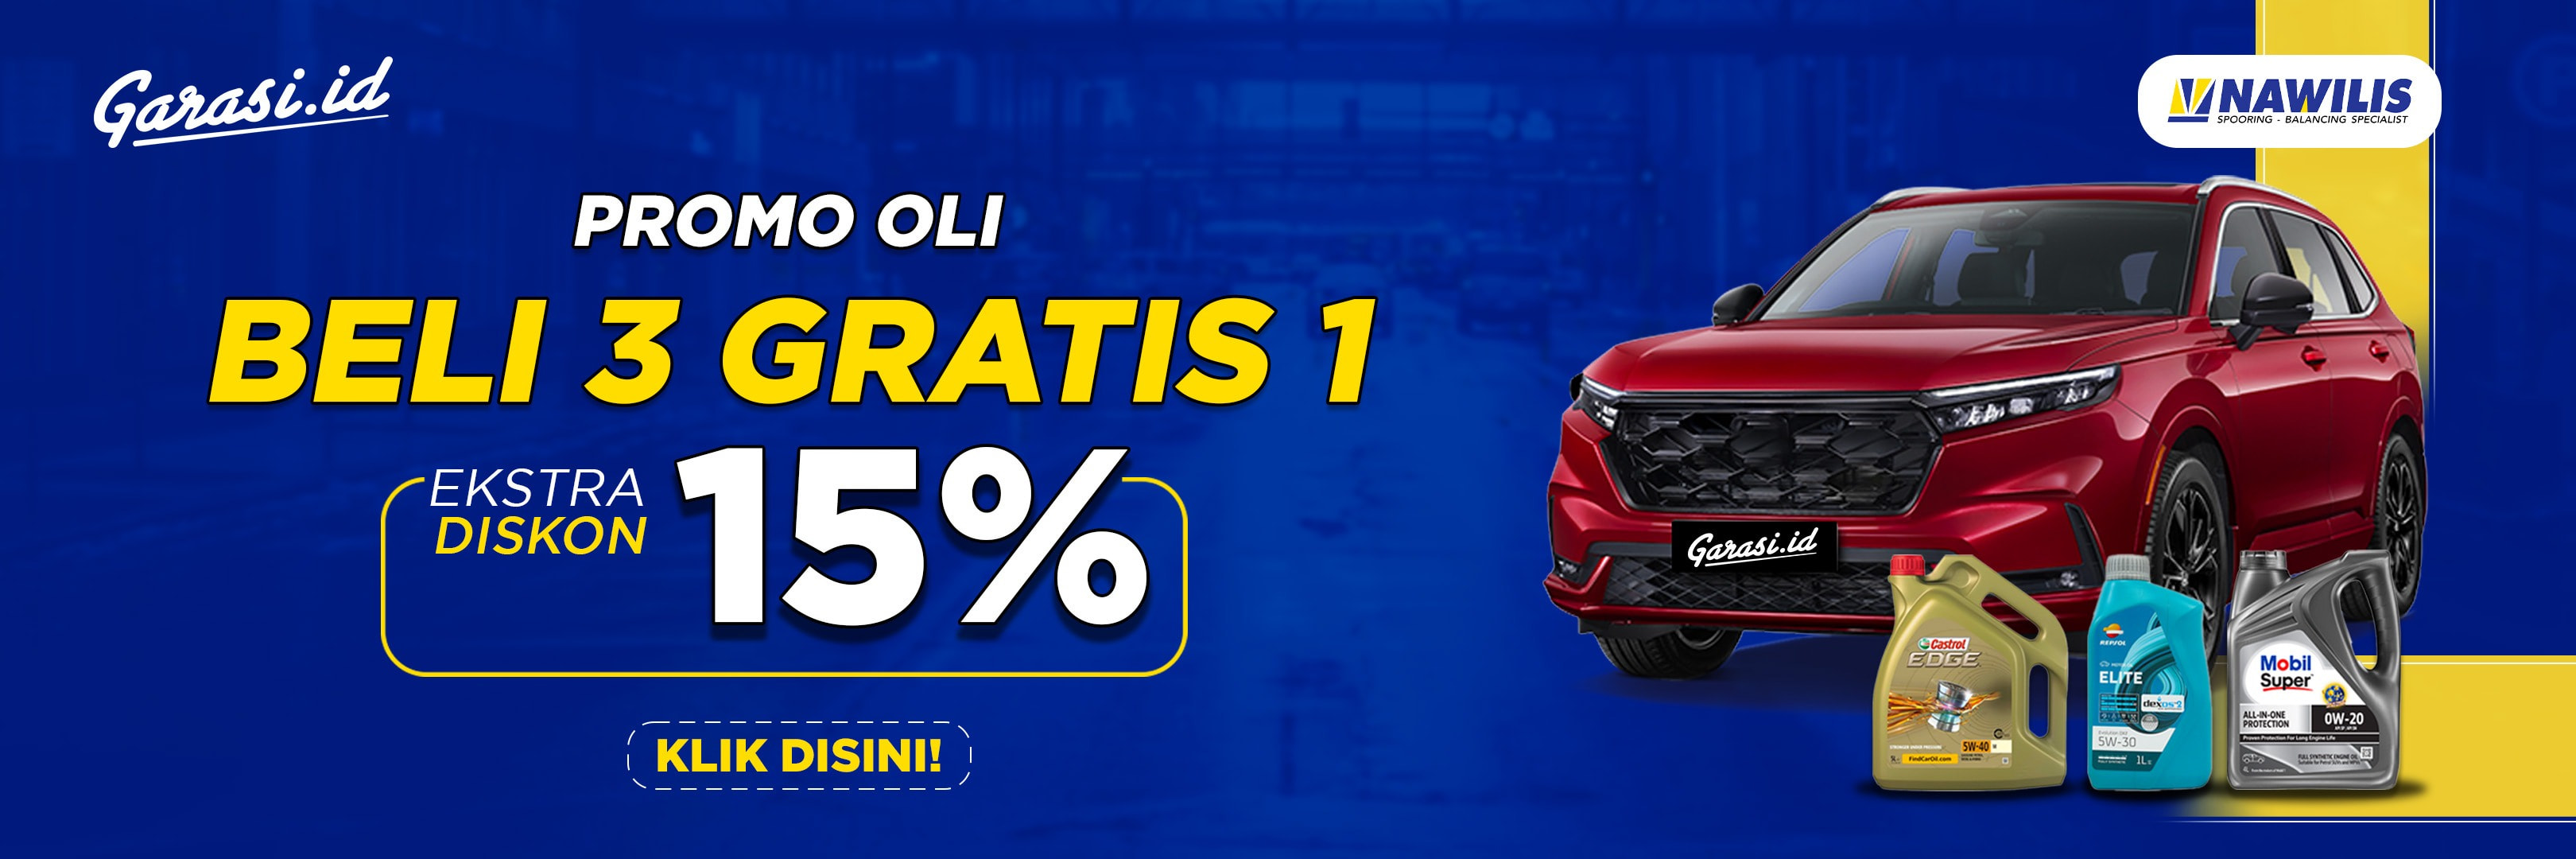 Spesial Promo Ganti Oli Buy 3 Get 1 + Discount 15% hanya di Bengkel Nawilis!